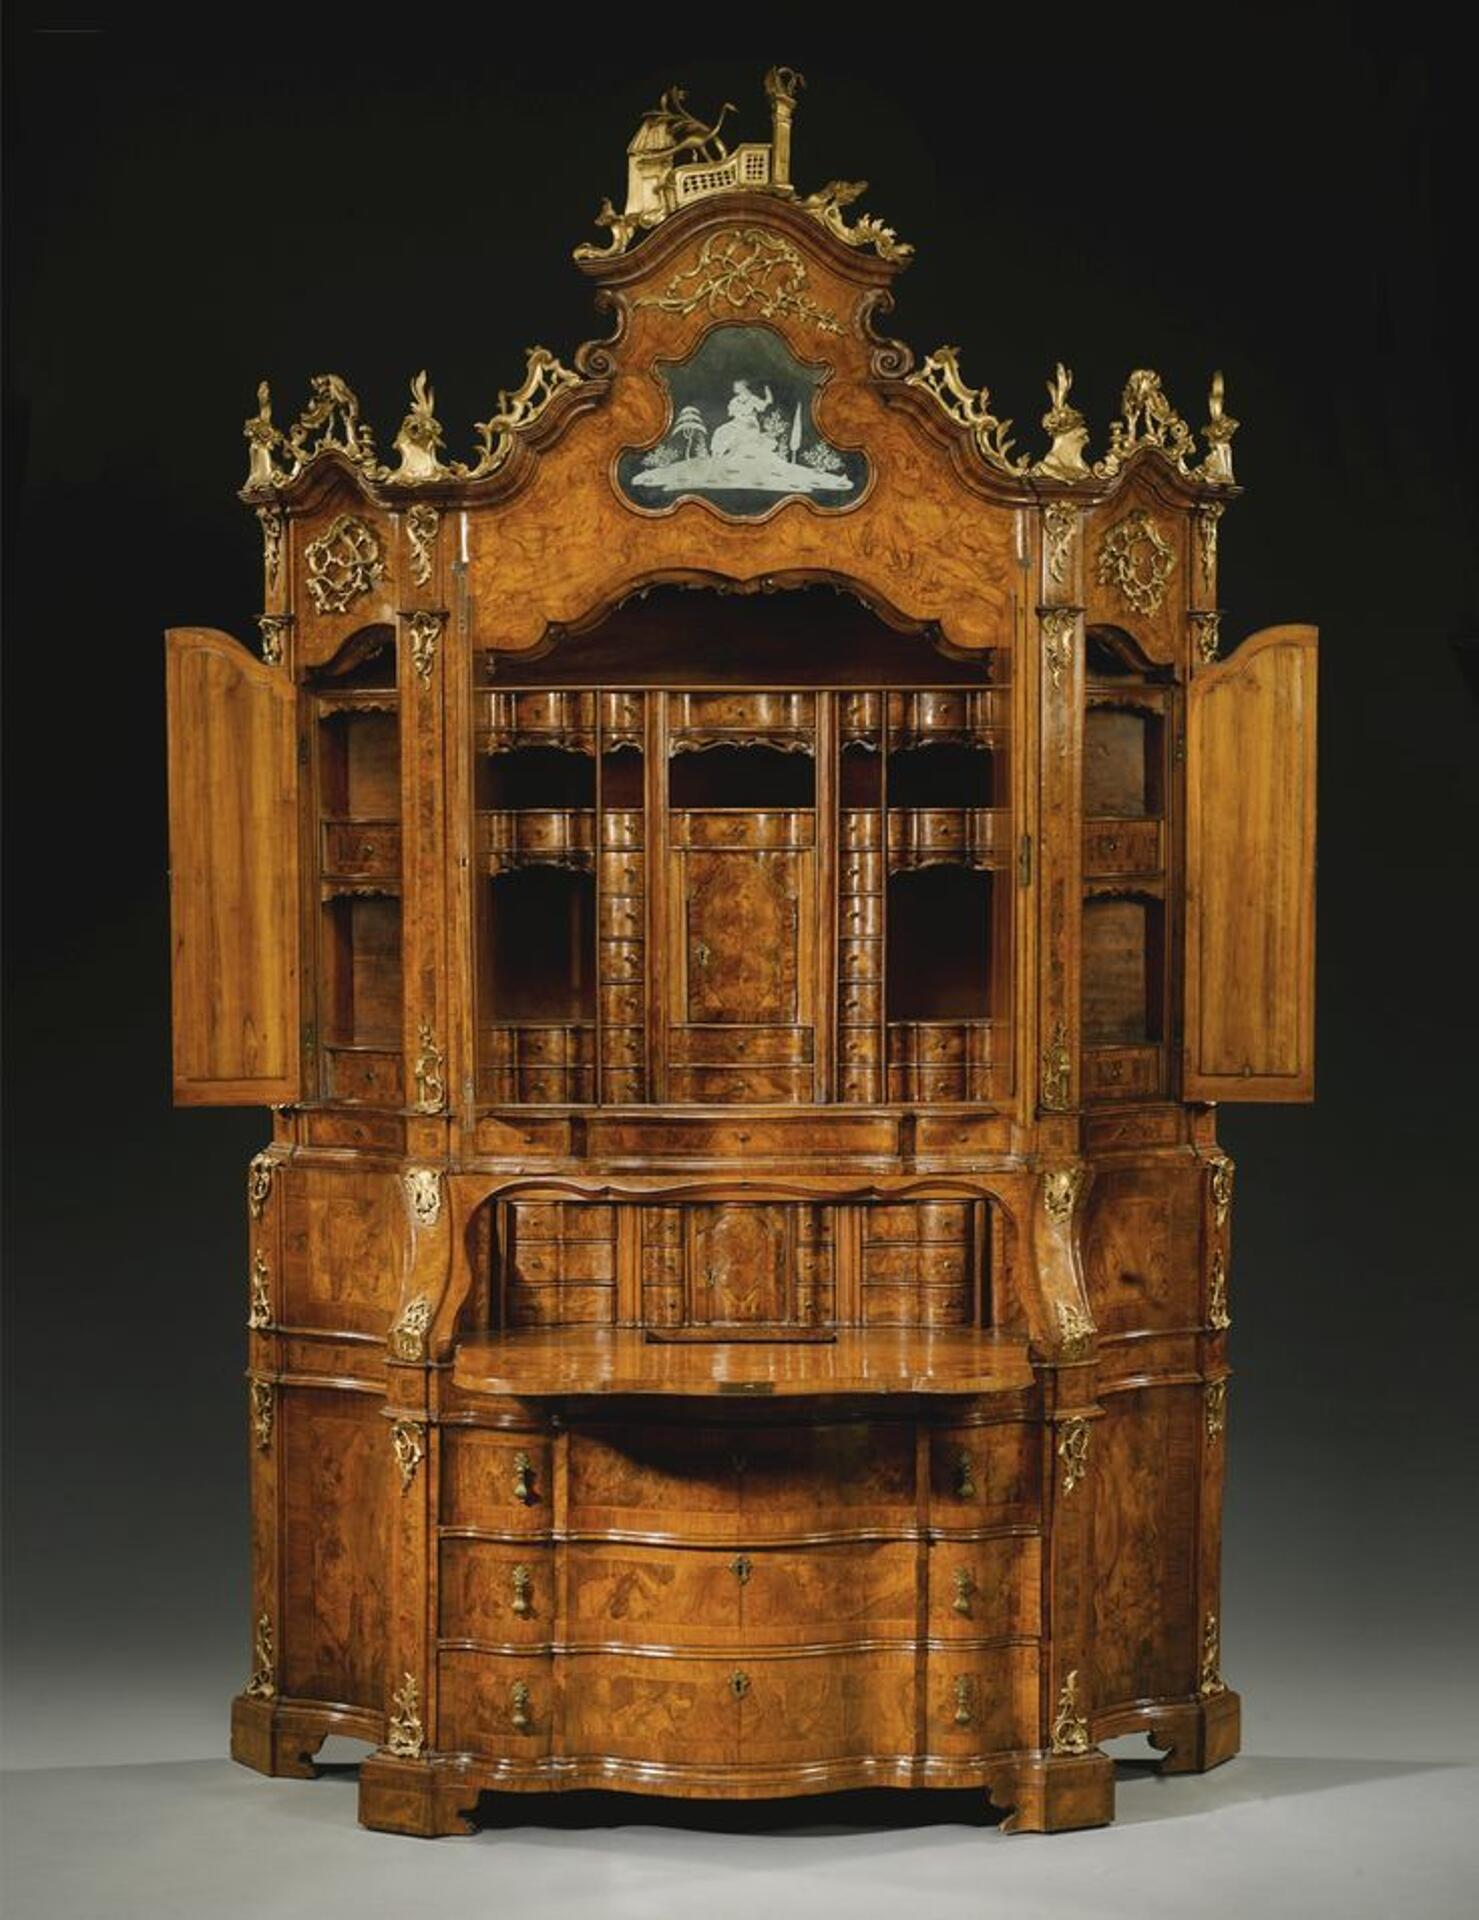 pregiato trumeau realizzato in stile luigi XV con gli interni lavorati a mano vani porta monili e piccoli cassetti sagomati e intarsiati ripresi dal secretaire originale della prima metà del 1700